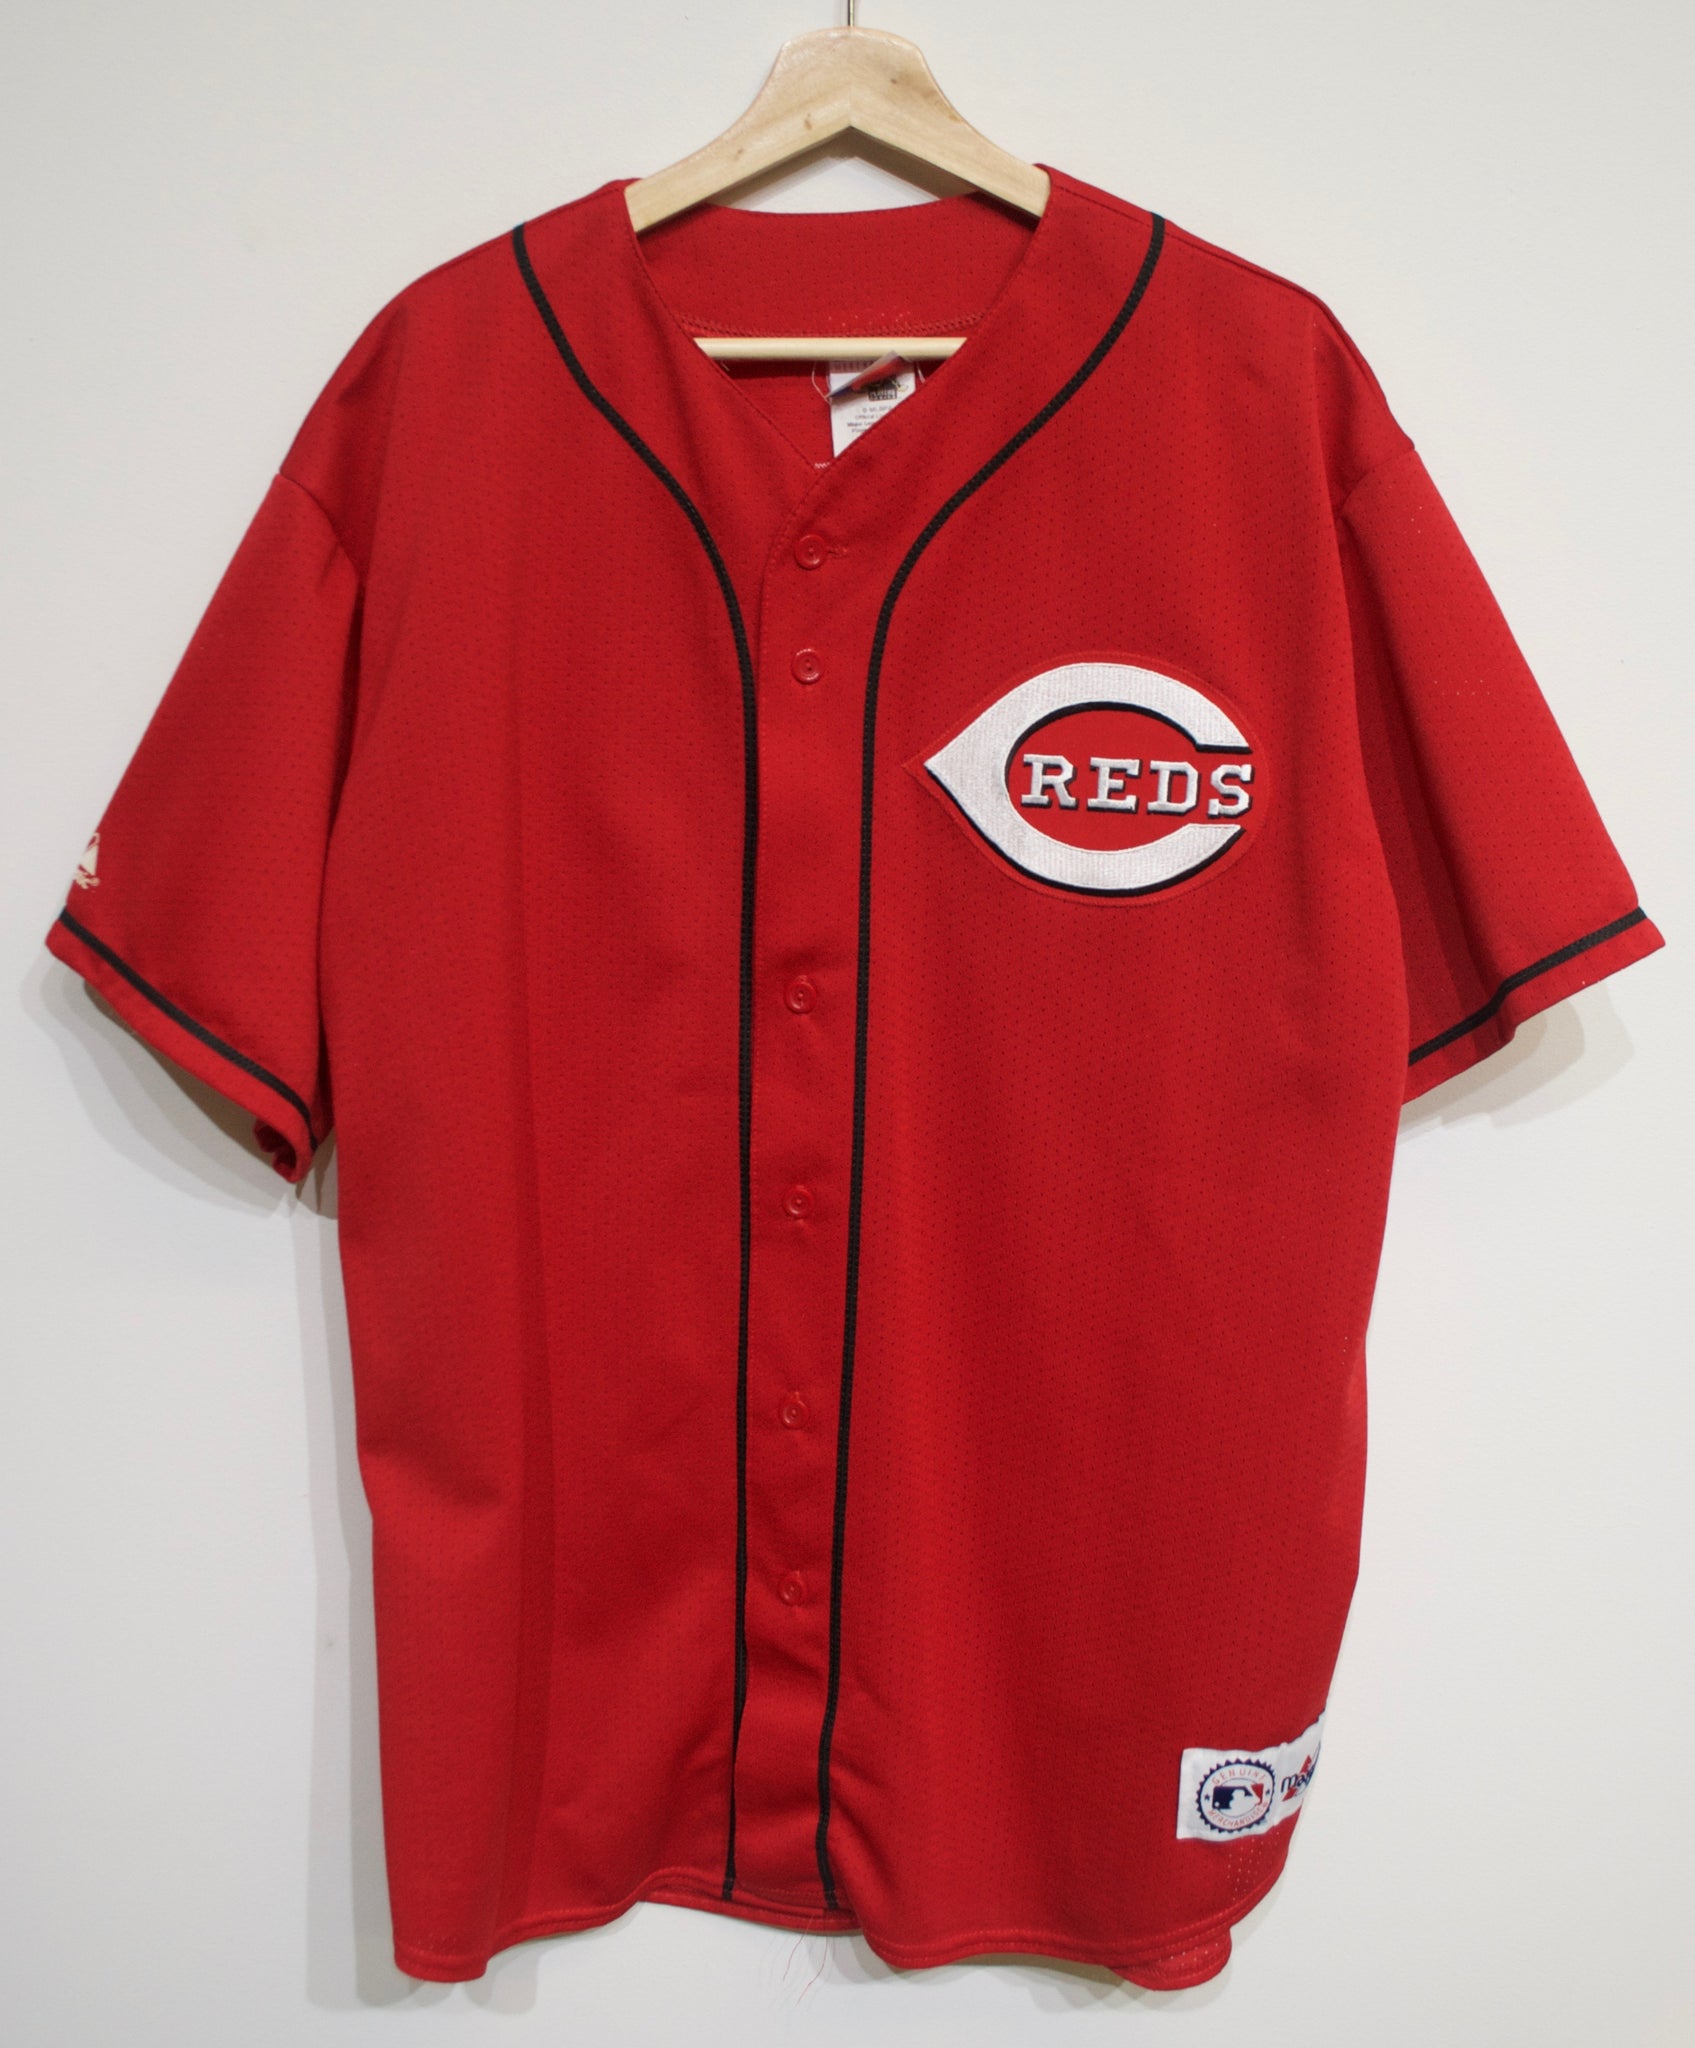 Cincinnati Reds Button-Up Baseball Jersey - Red